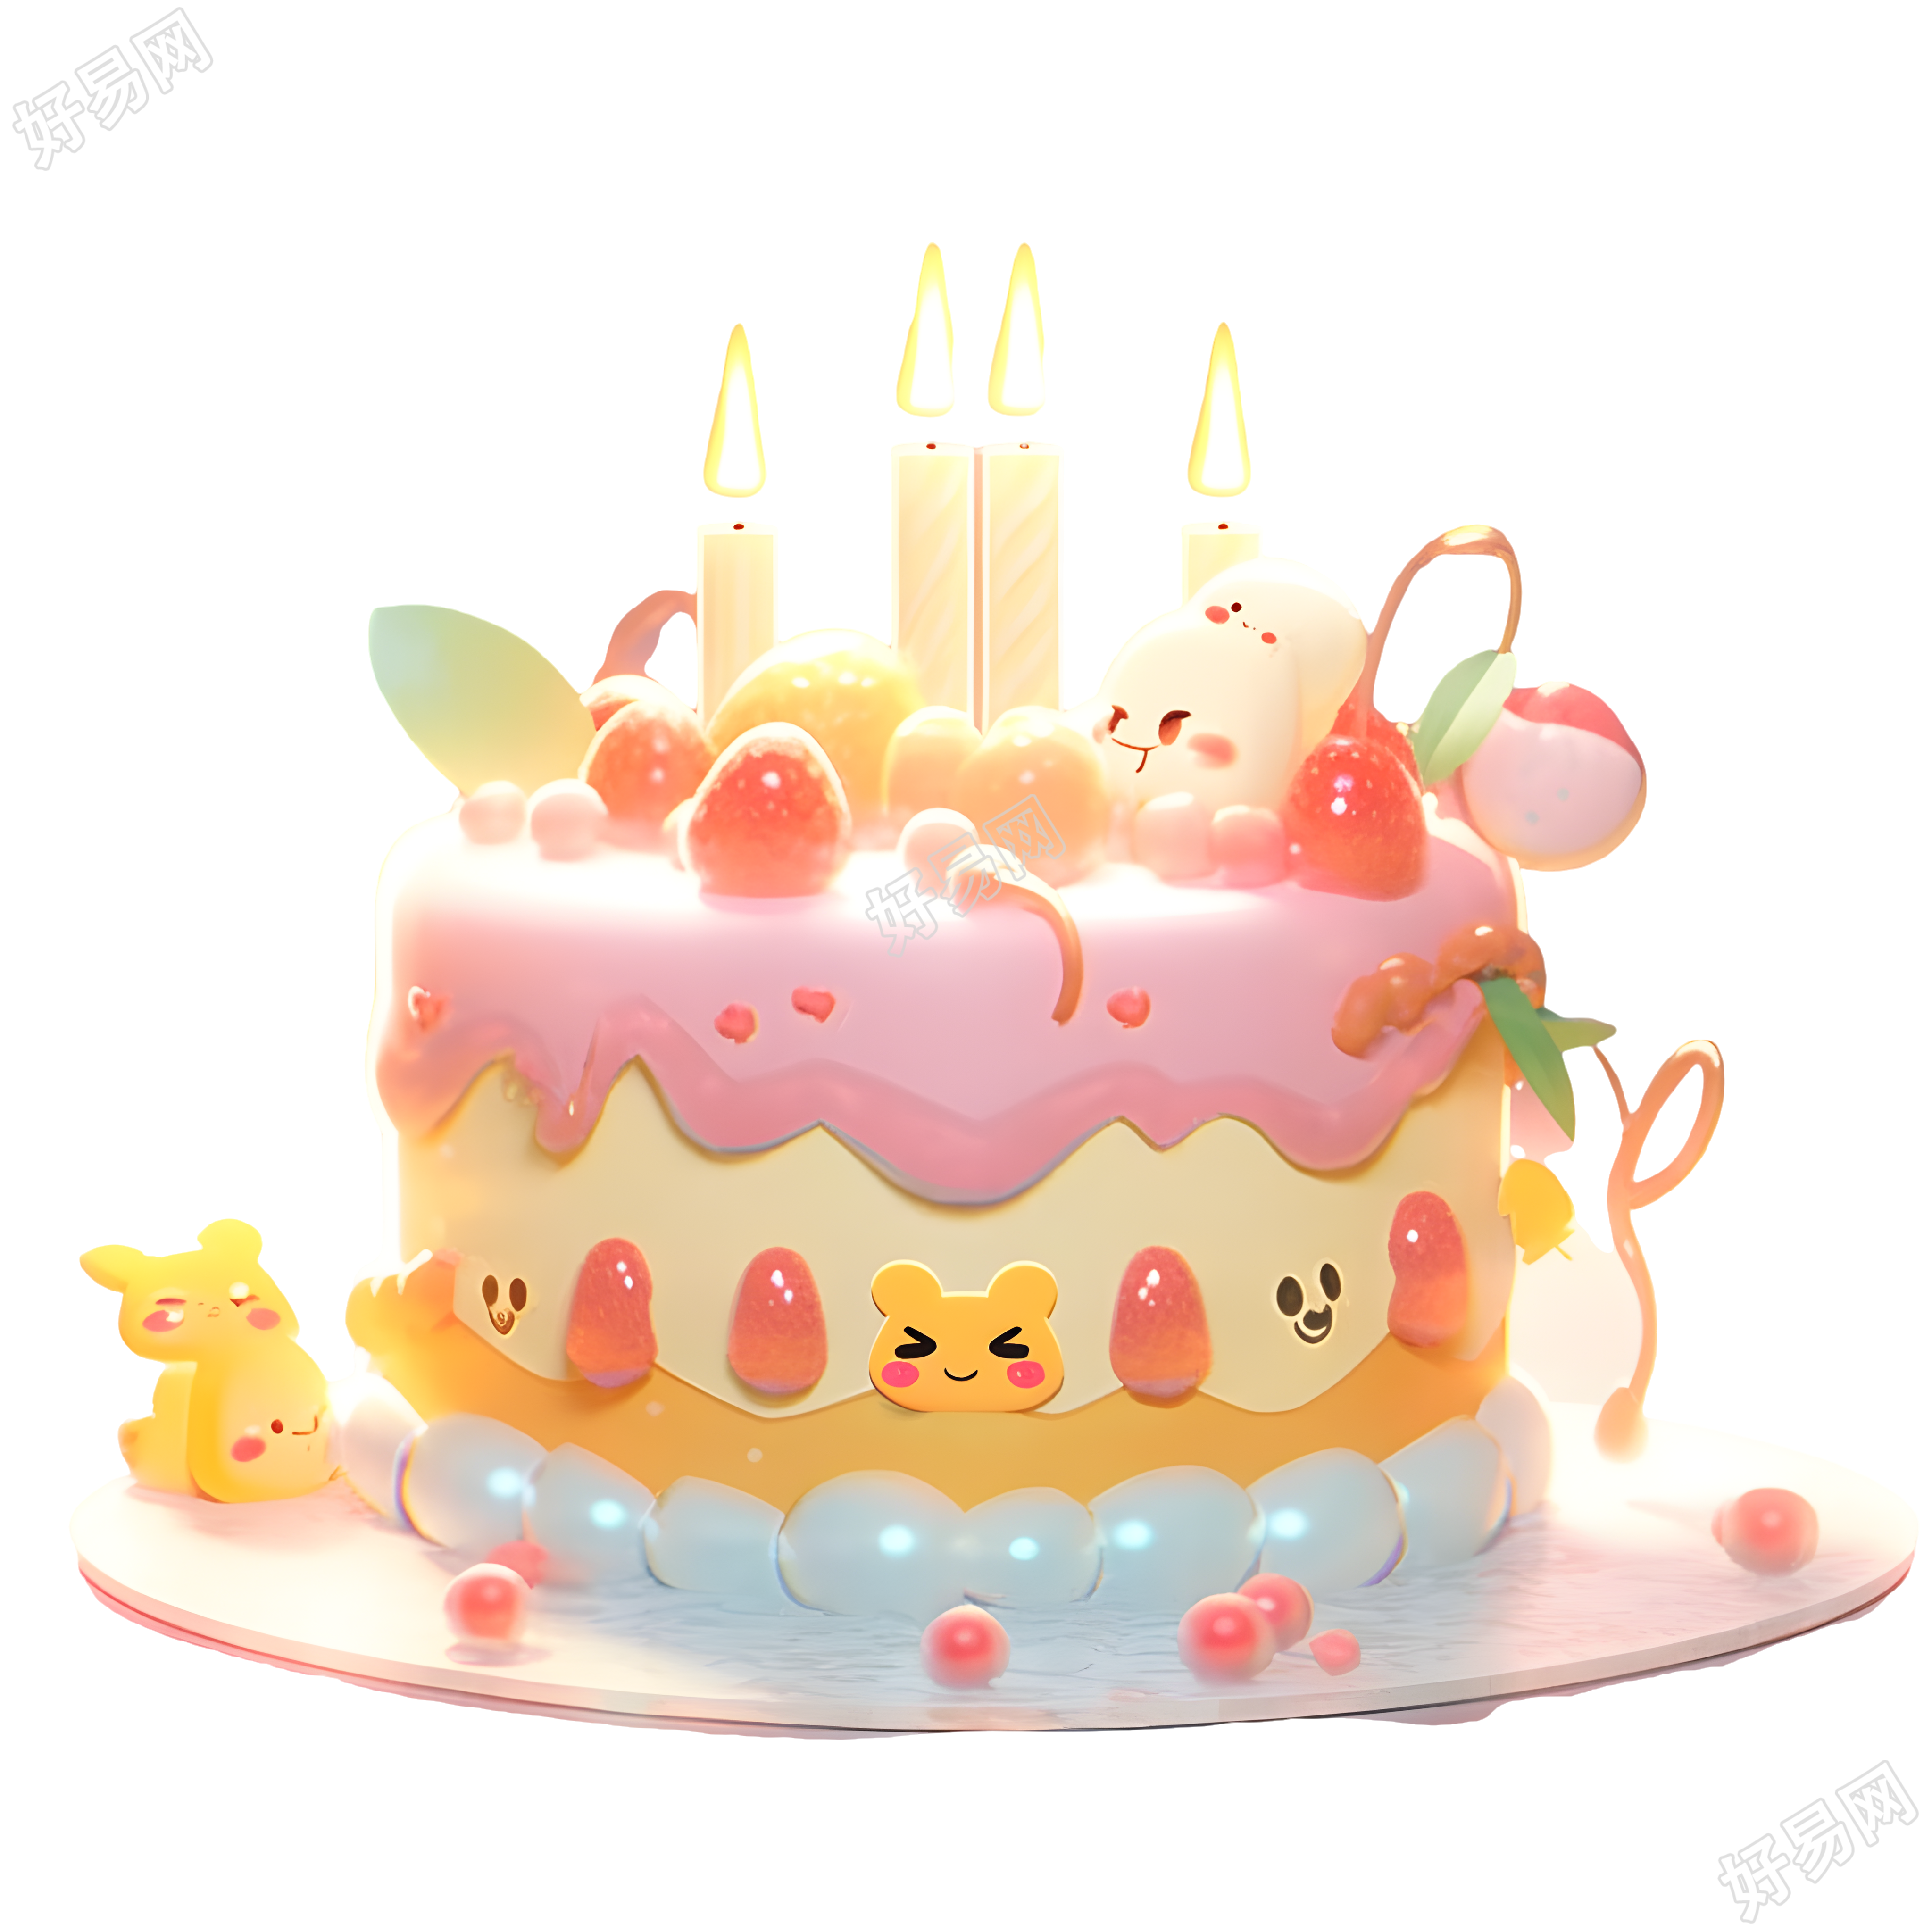 生日蛋糕透明背景插画设计元素